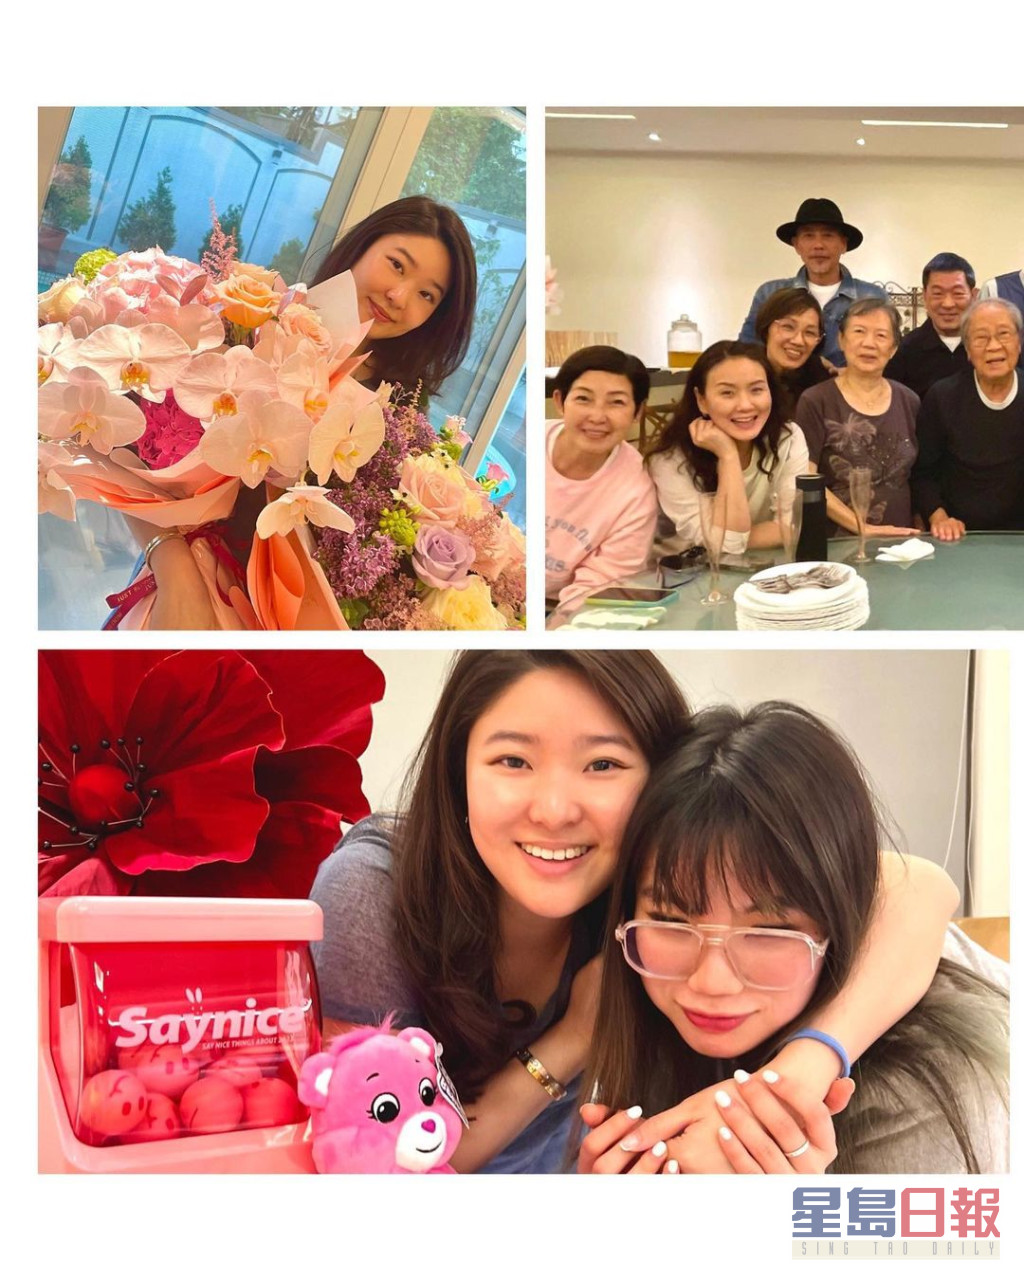 韩马利与丈夫杜燕歌、袁伟豪与太张宝儿、黎芷珊等艺人为Charmaine庆祝生日。